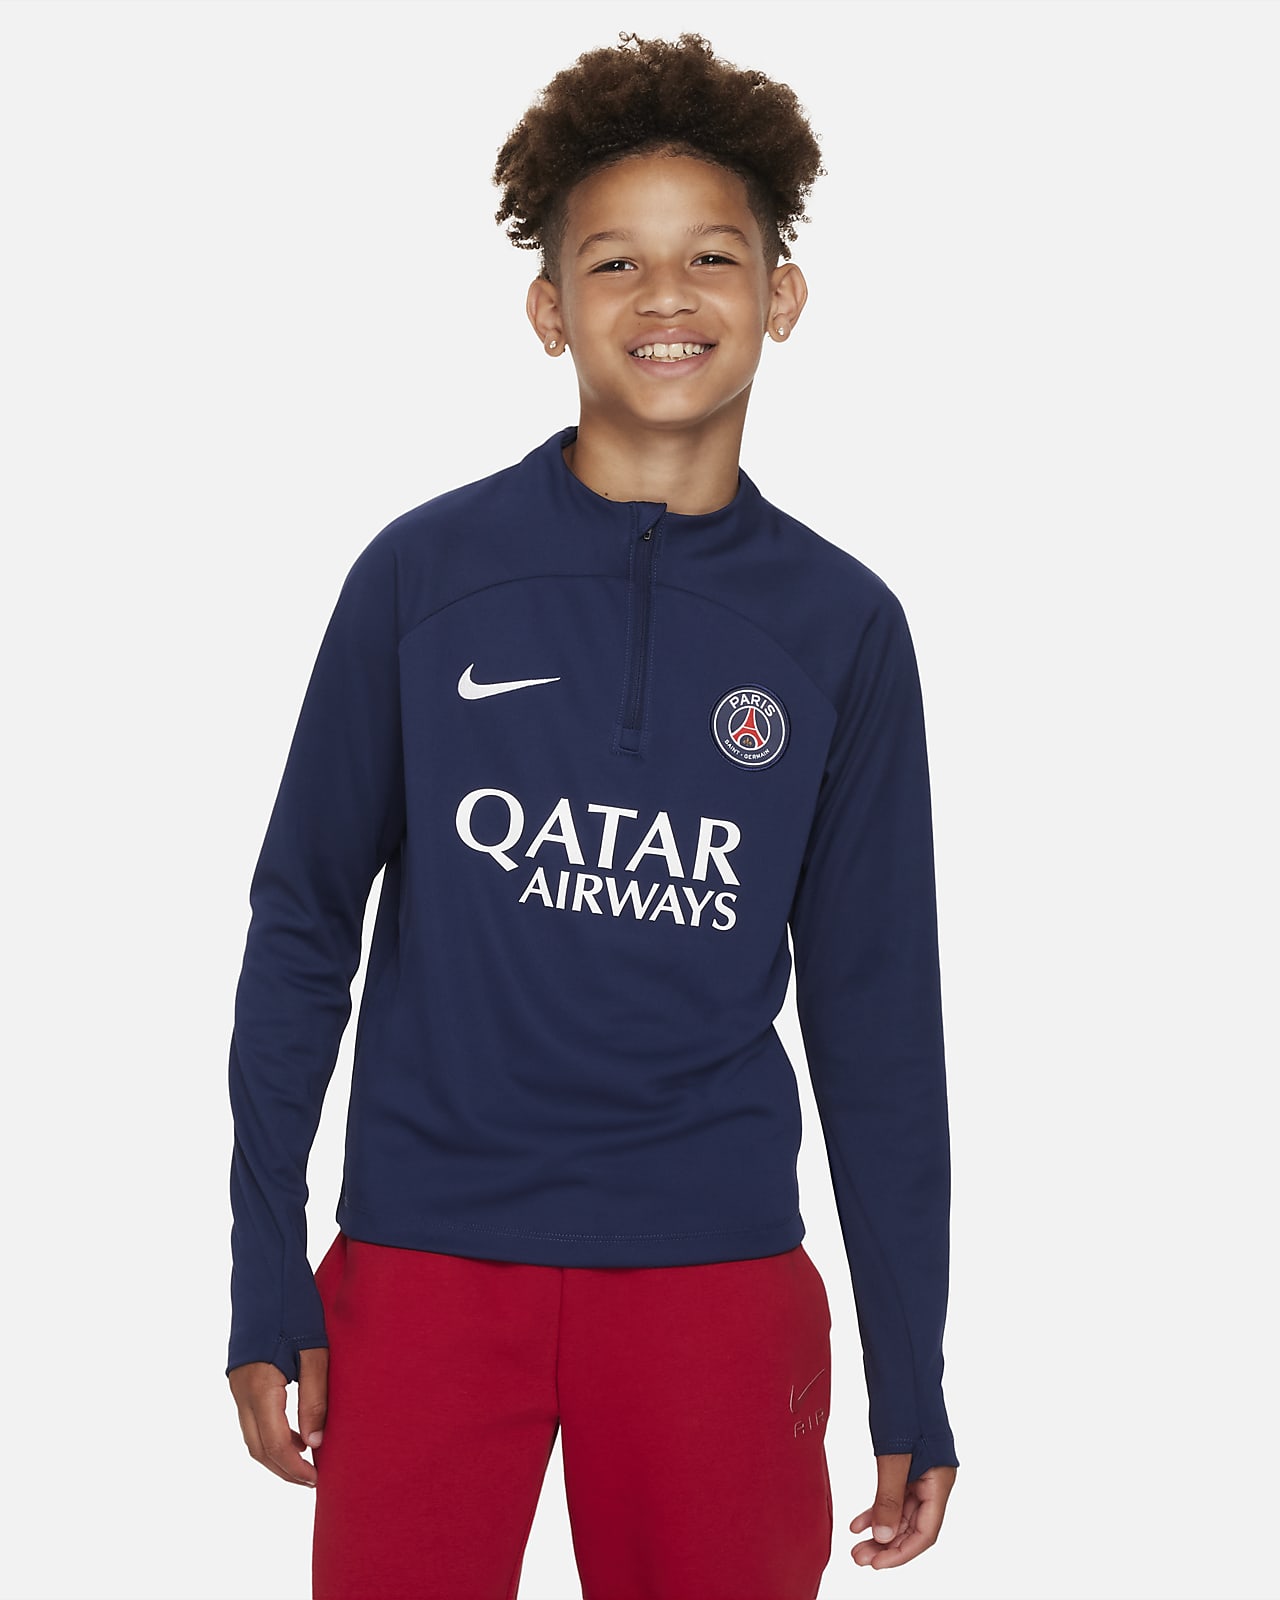 Saint-Germain Academy Older Kids' Nike Dri-FIT Knit Football Drill Top. Nike LU